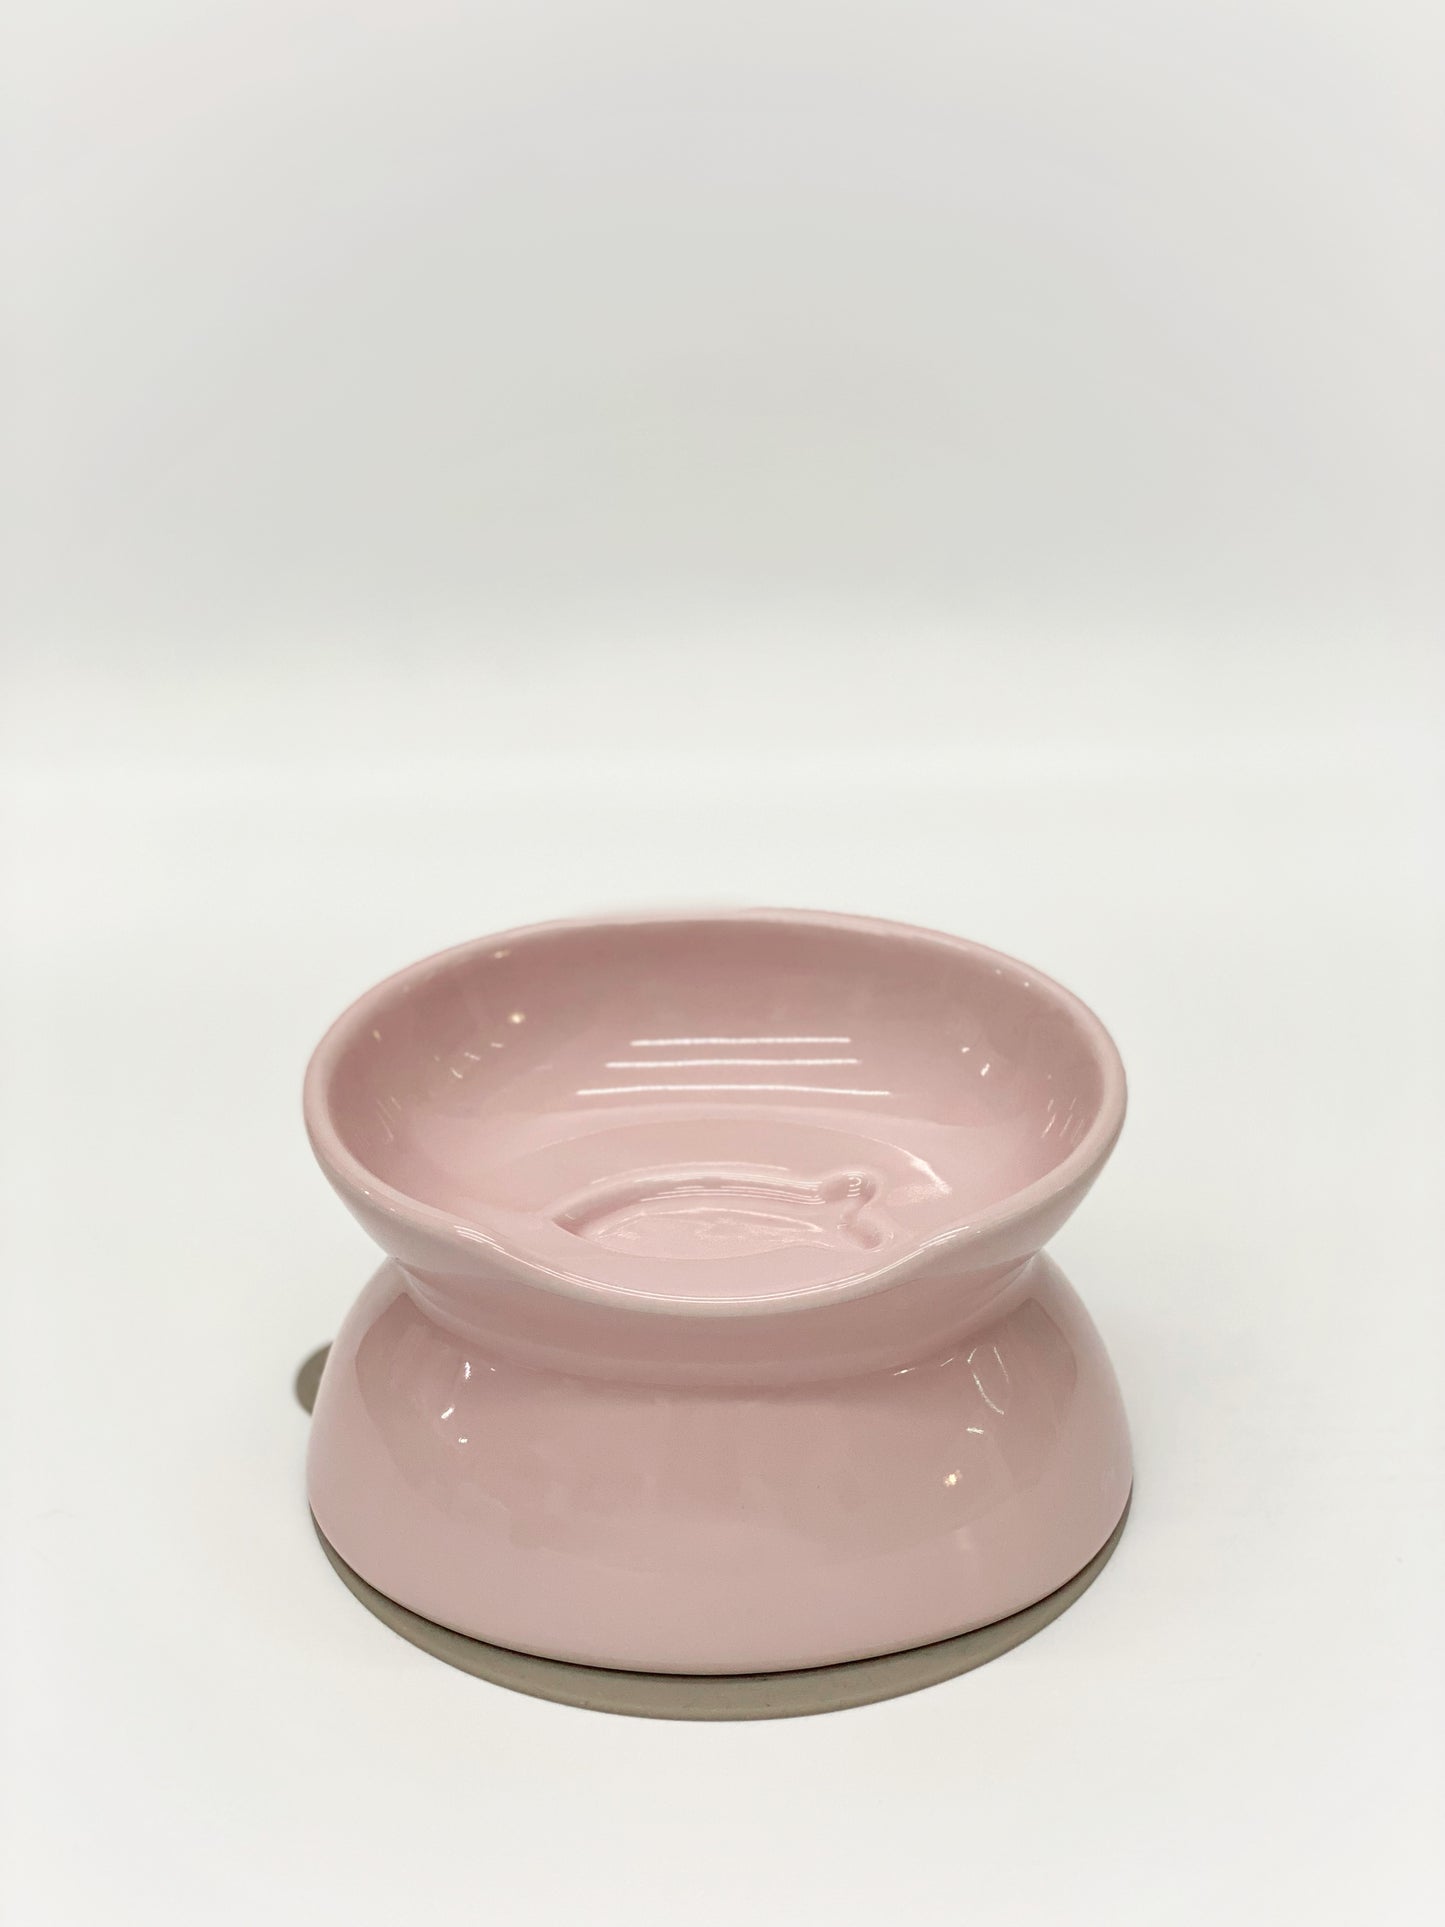 日本製 寵物食用碗 (粉紅色) | Made in Japan Pet Food Bowl (Pink)